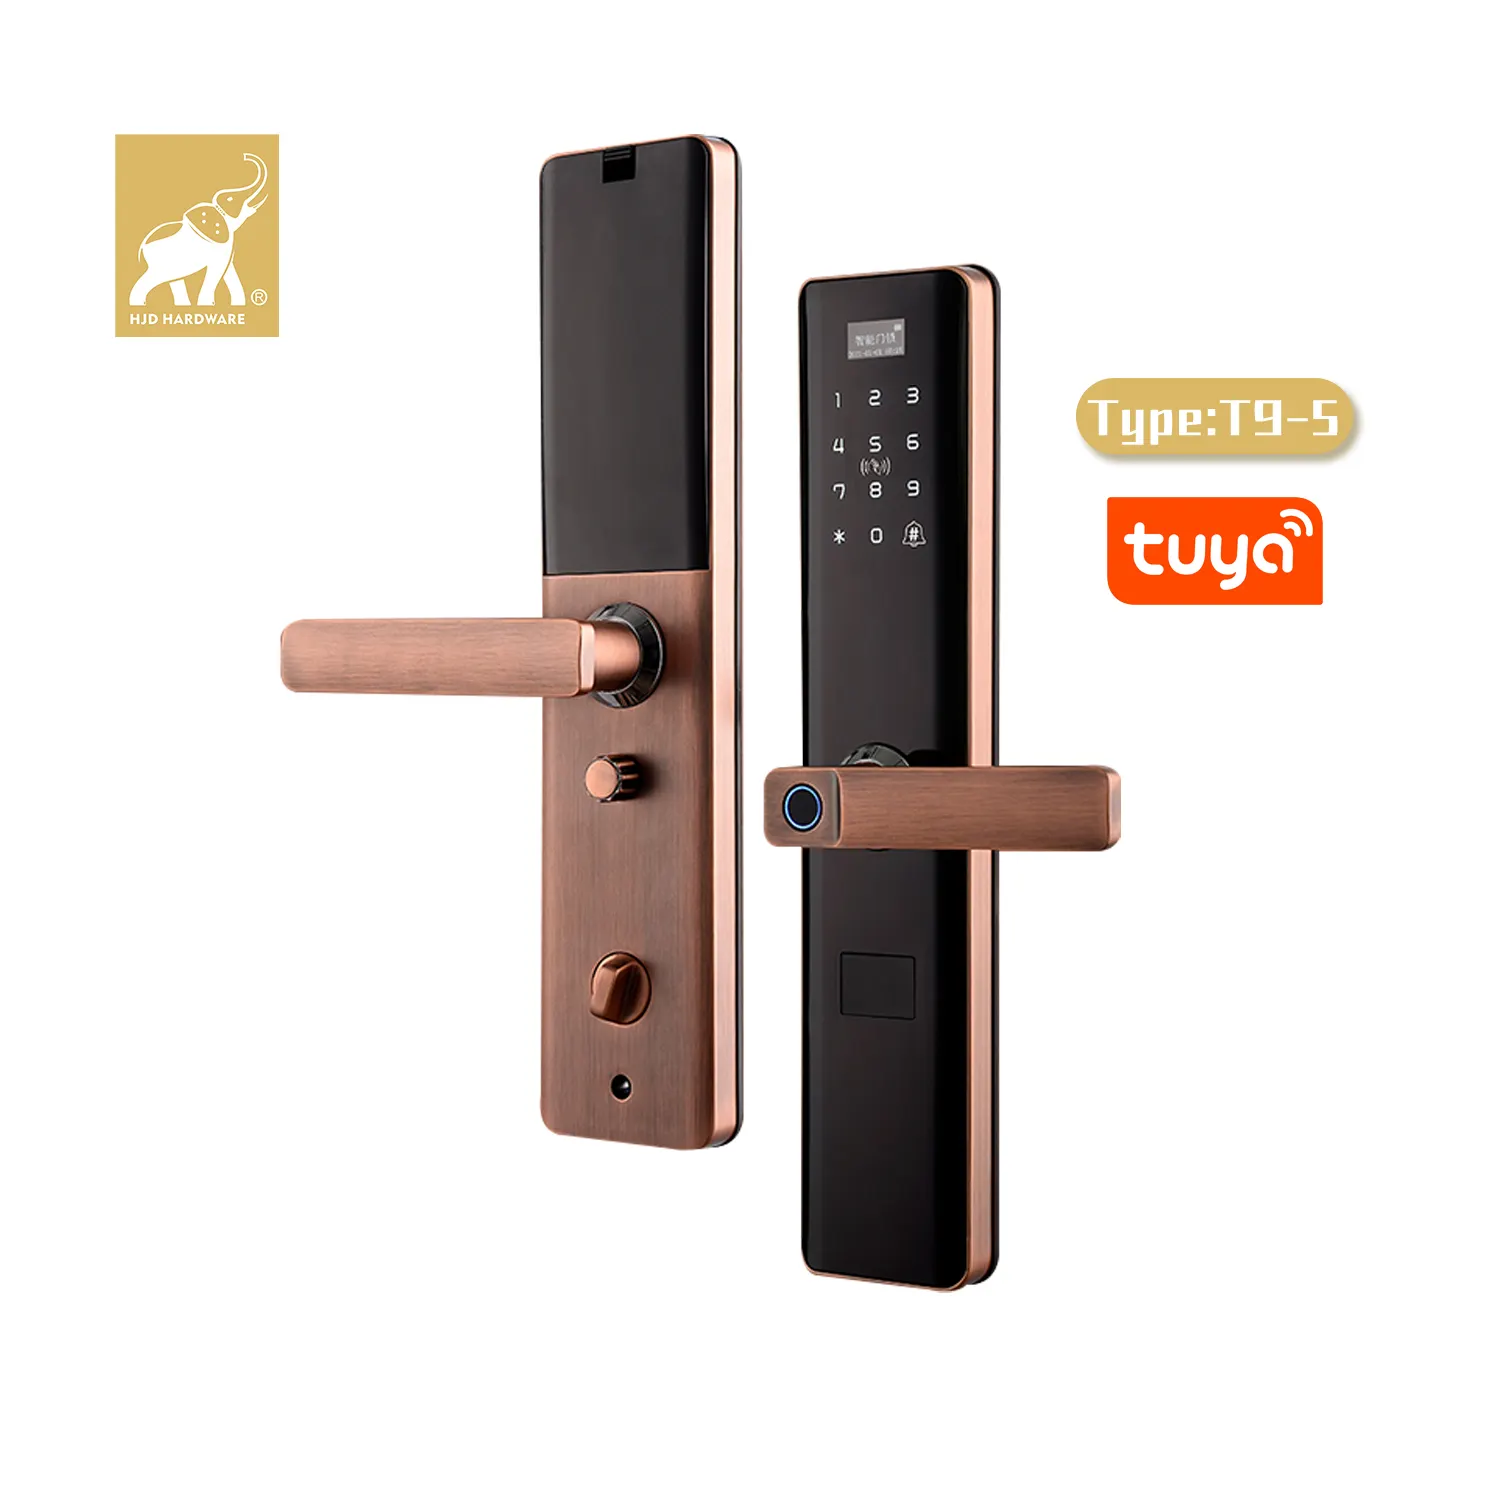 HJD-cerradura inteligente para T9-5, dispositivo de seguridad Digital para puerta de Hotel, alquiler de apartamentos, con aplicación Tuya Usmartgo